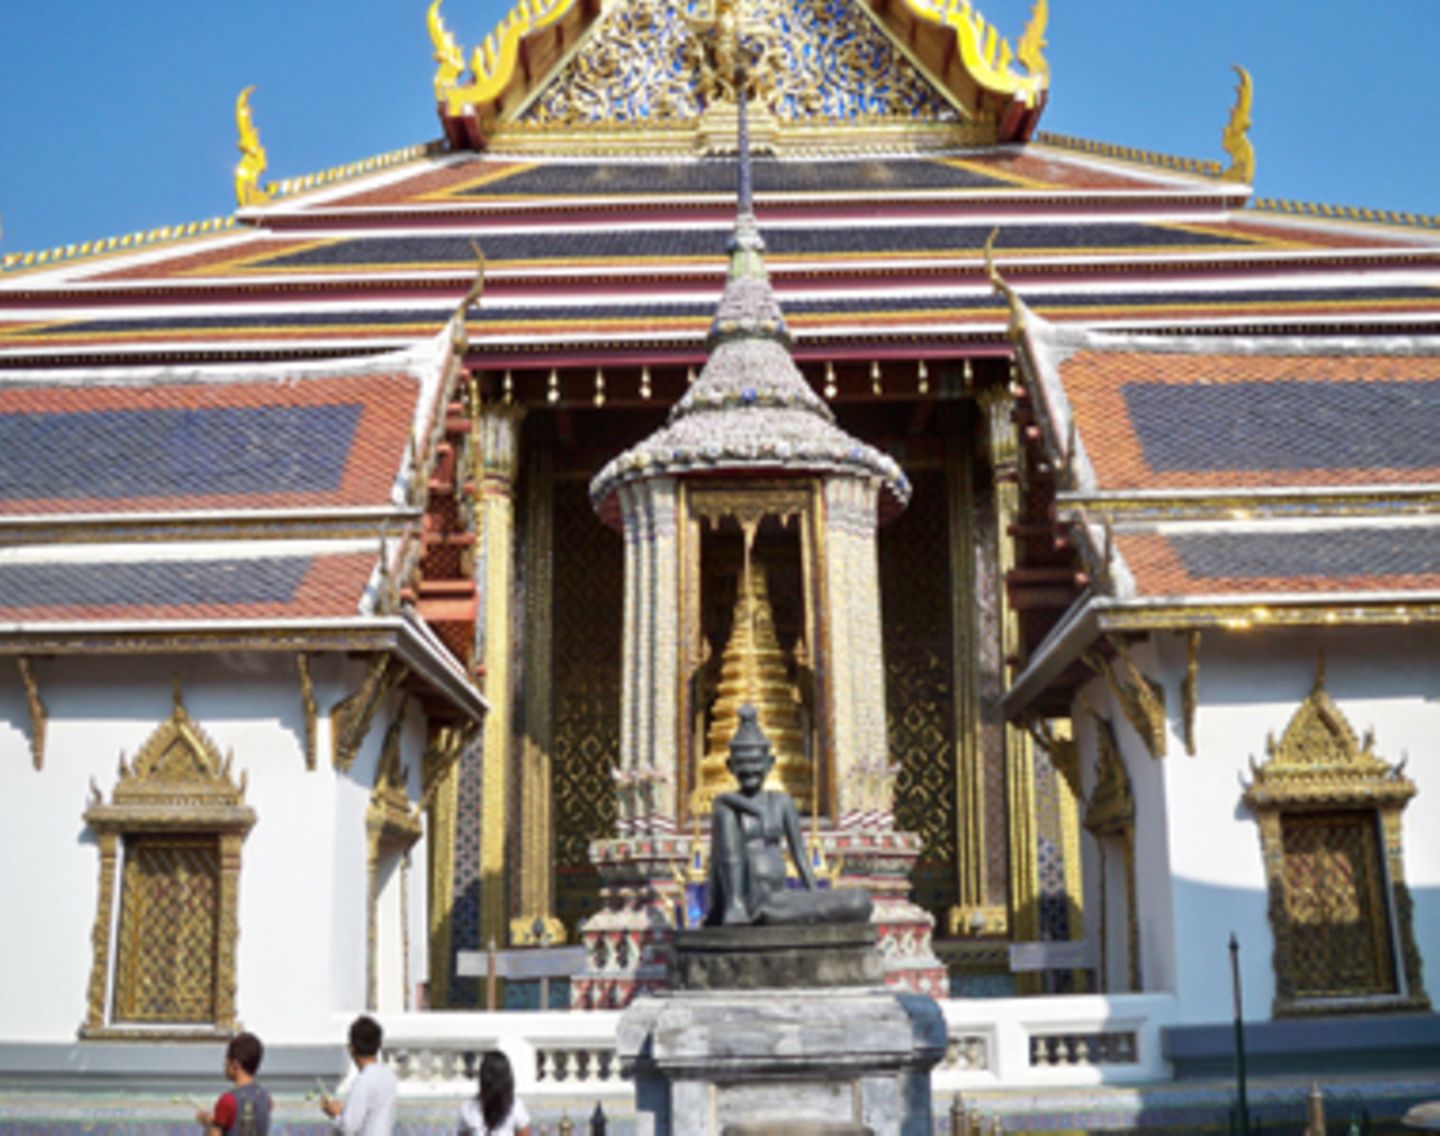 Viele der Dächer und Statuen sind mit echtem Gold überzogen. Der Besuch von Wat Phra Kaeo gehört zum absoluten Pflichtprogramm für Touristen in Bangkok.